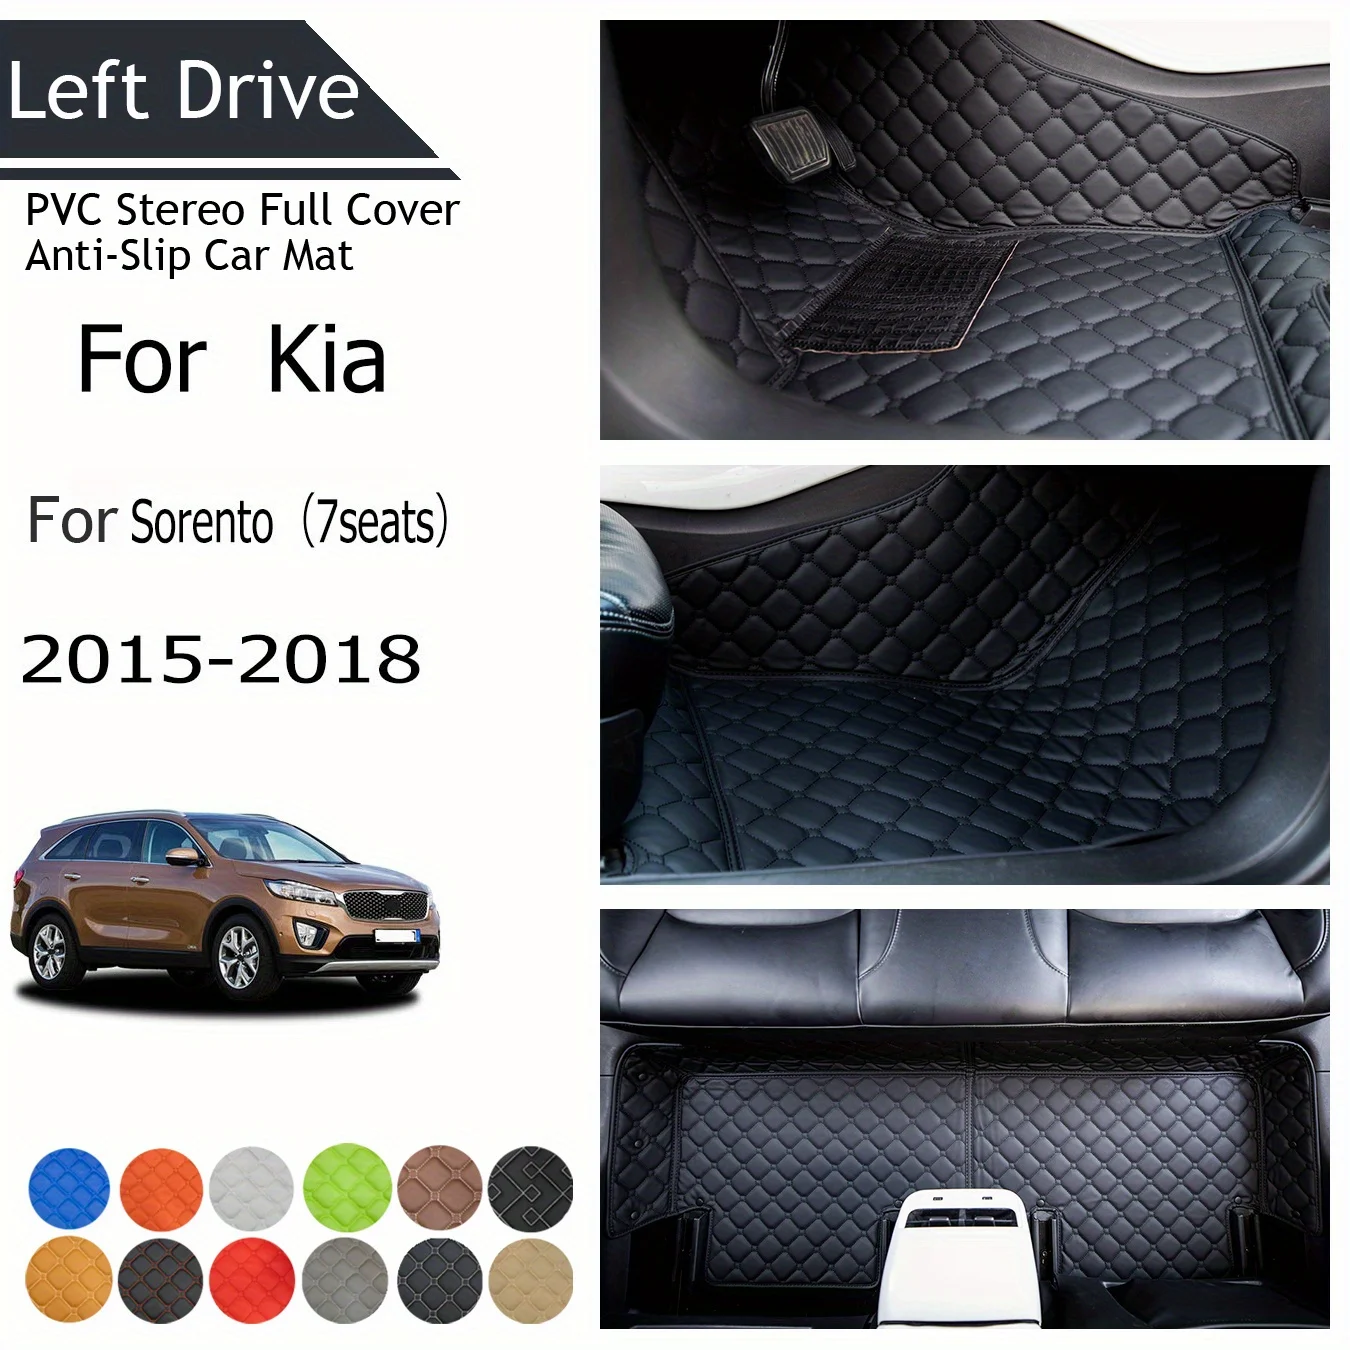 

[HD] для KIA для Sorento(7 сидений) 2015-2018, трехслойный ПВХ стерео полноразмерный Противоскользящий автомобильный коврик, автомобильные напольные коврики, автомобильные аксессуары